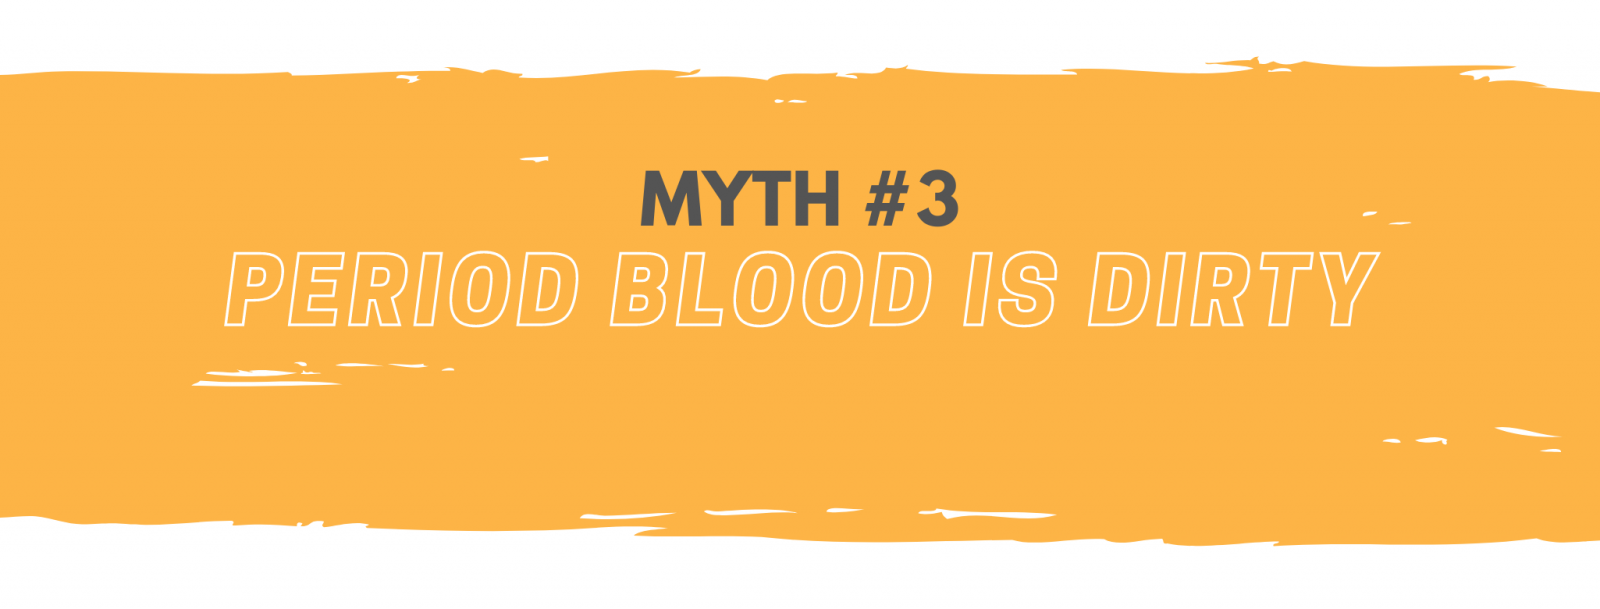 Period blood is dirty myth